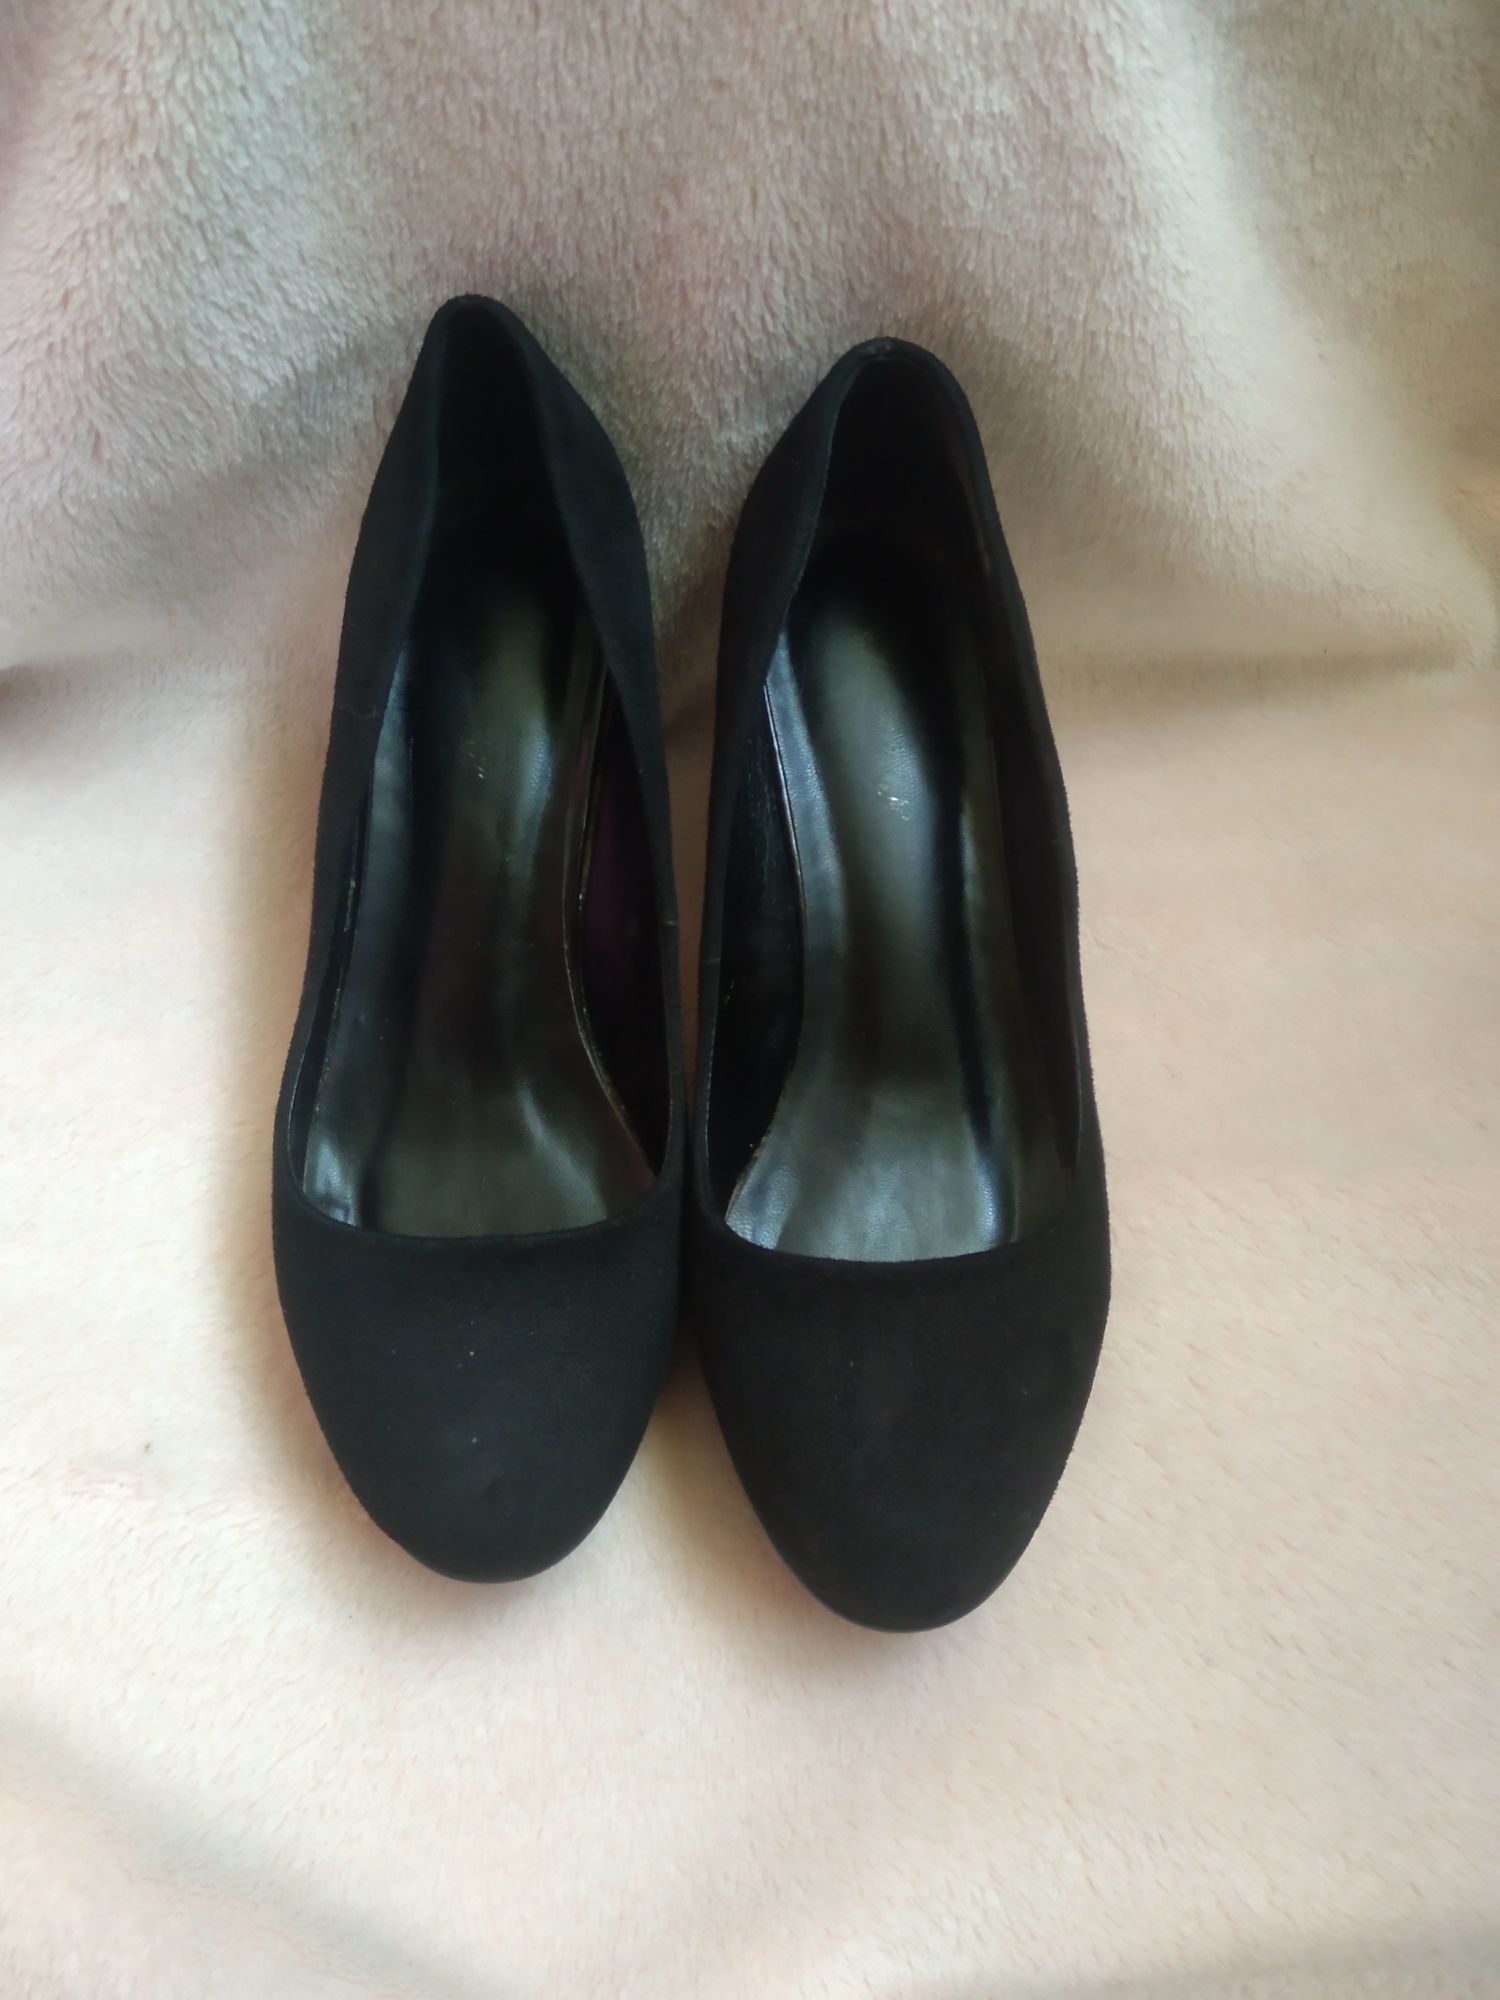 Туфлі жіночі замшеві